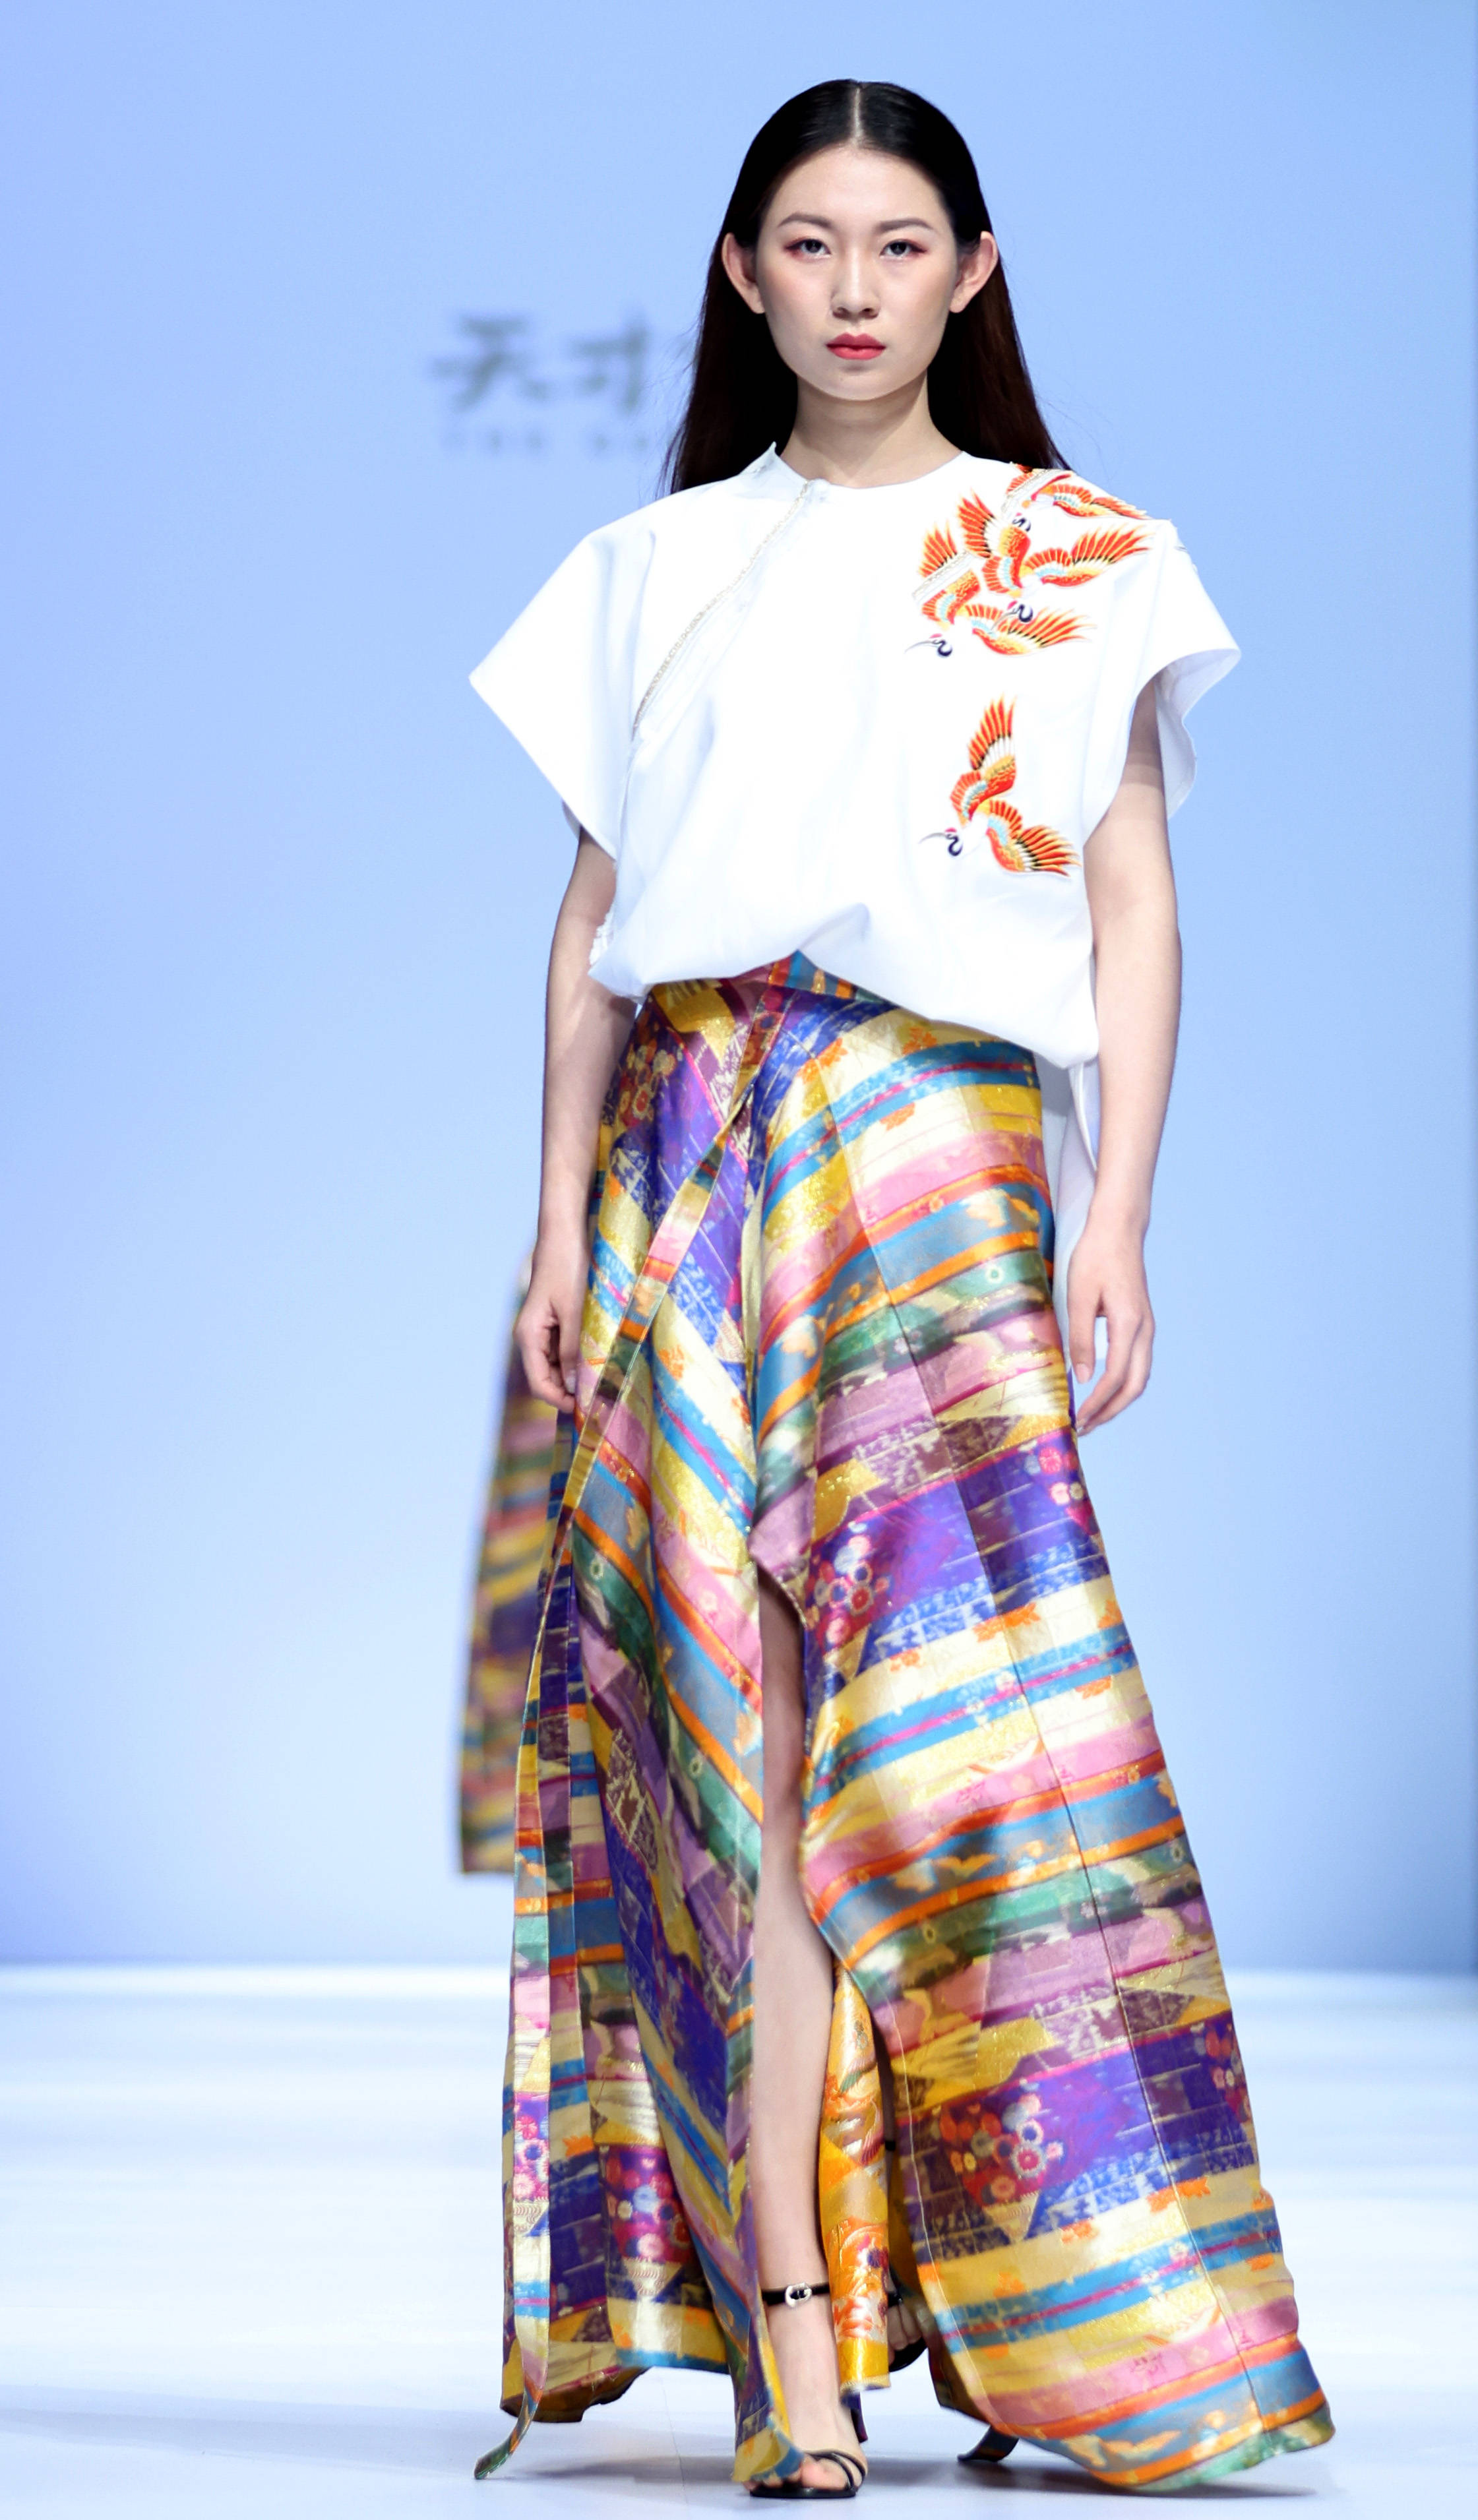 4月13日,模特在公益时装秀上展示时装设计师张肇达及其女儿张凯惠联合